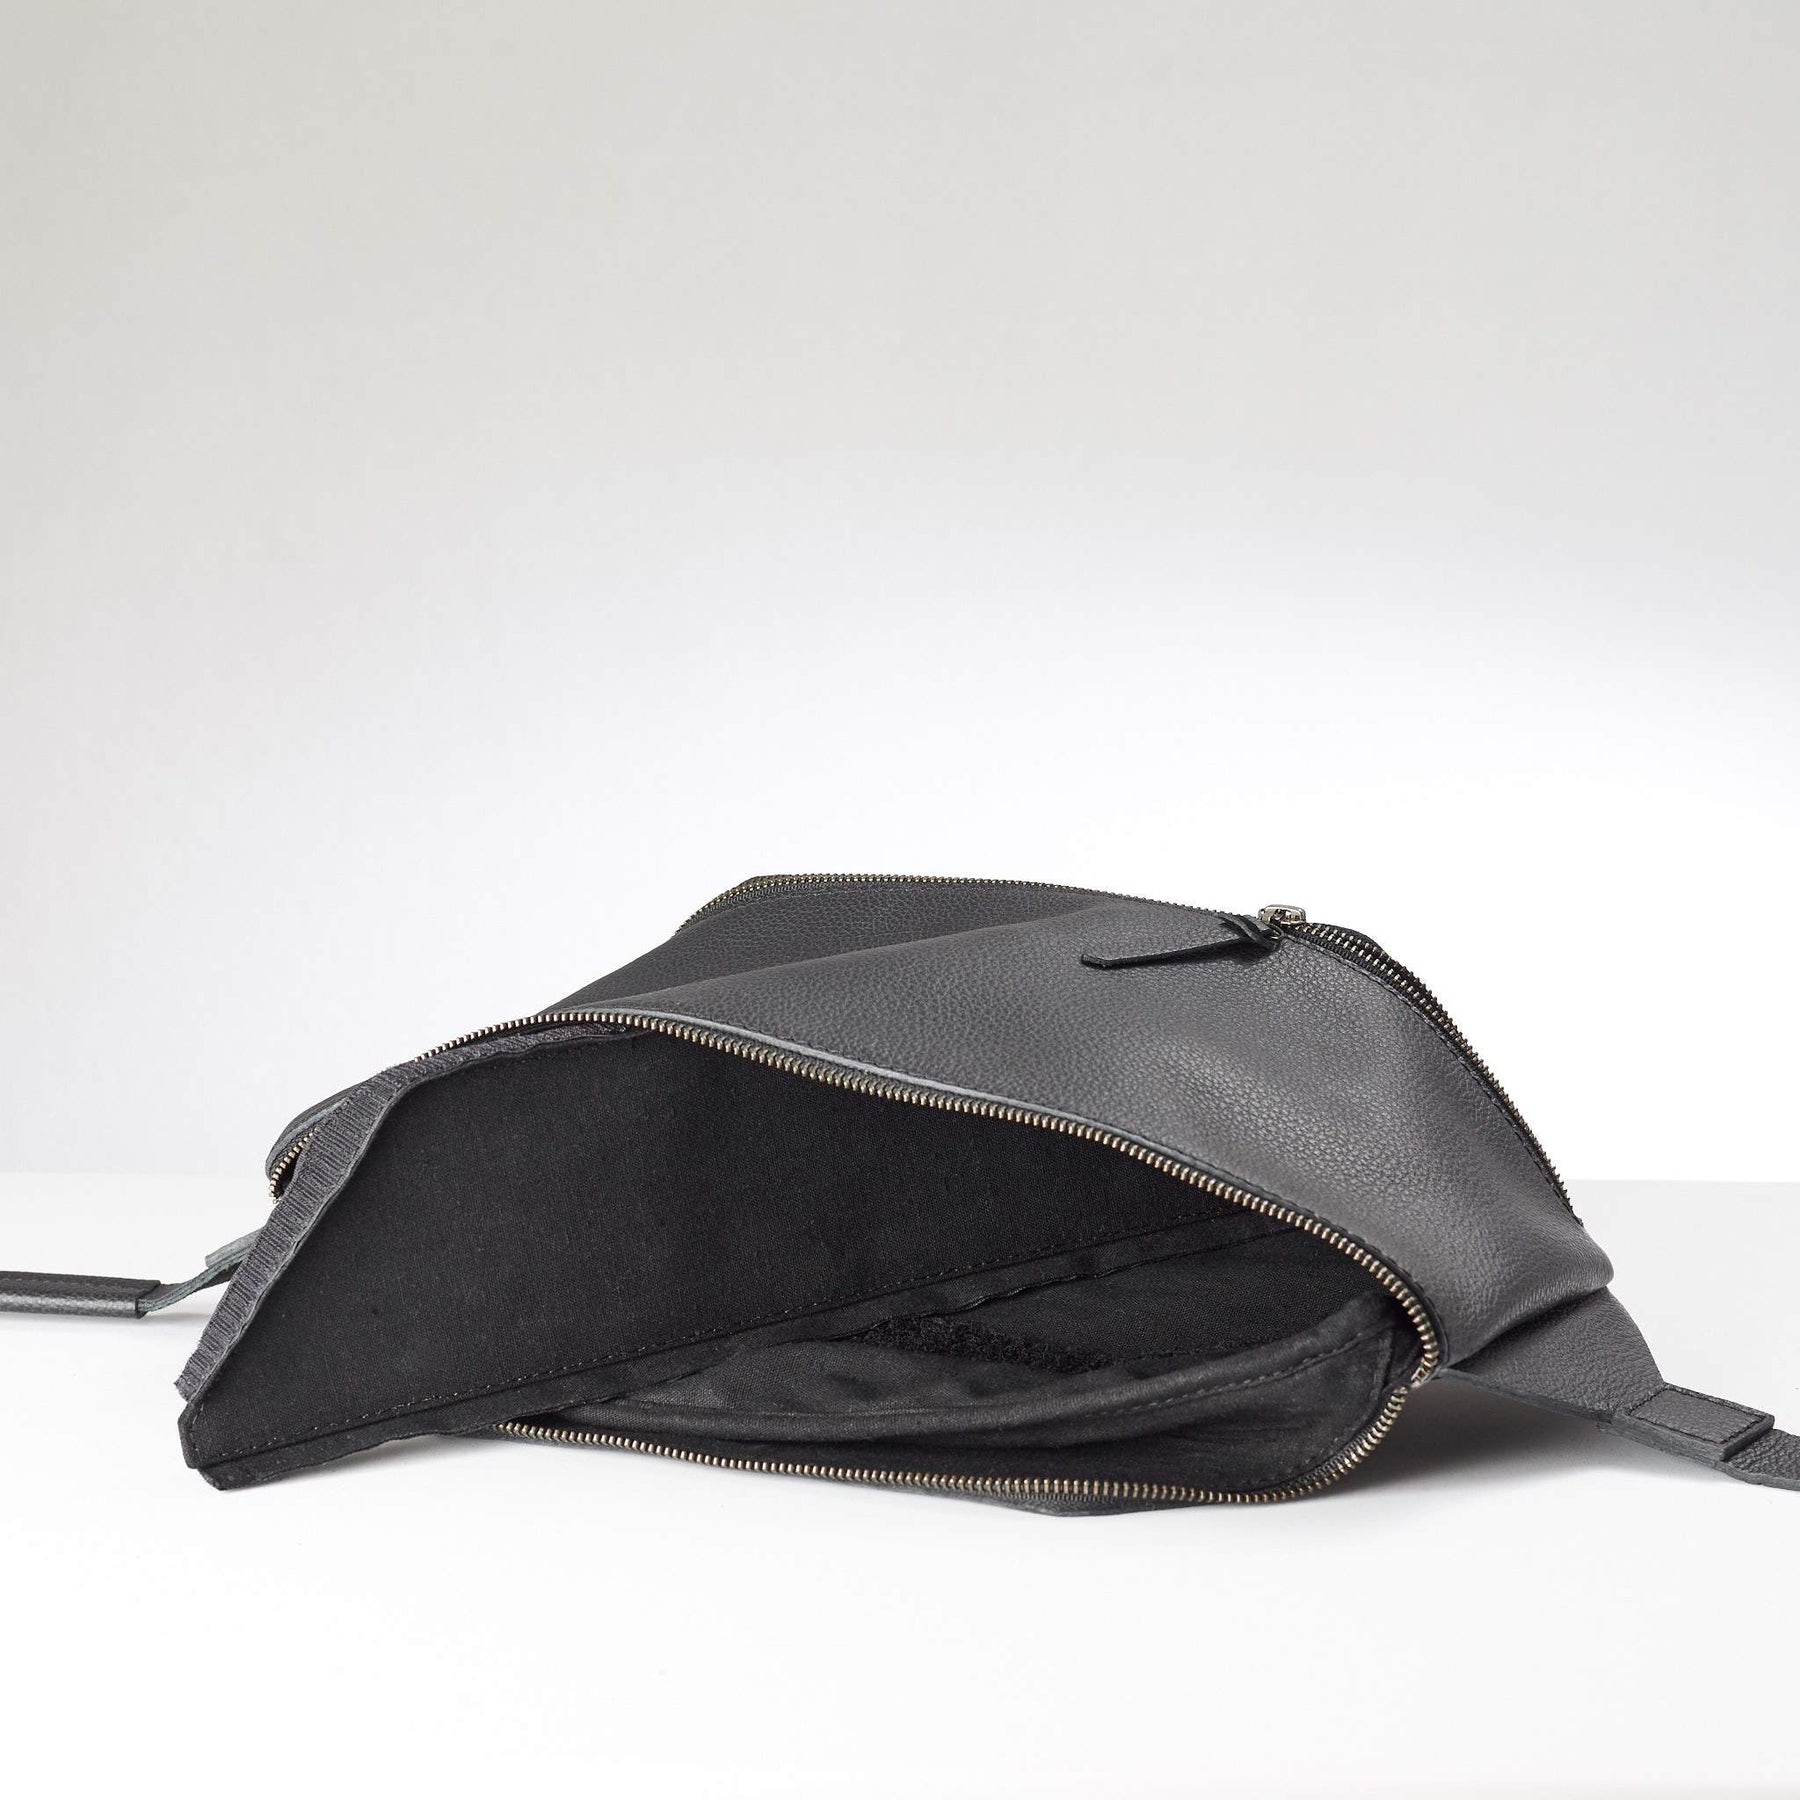 Fenek Sling Bag Black by Capra Leather